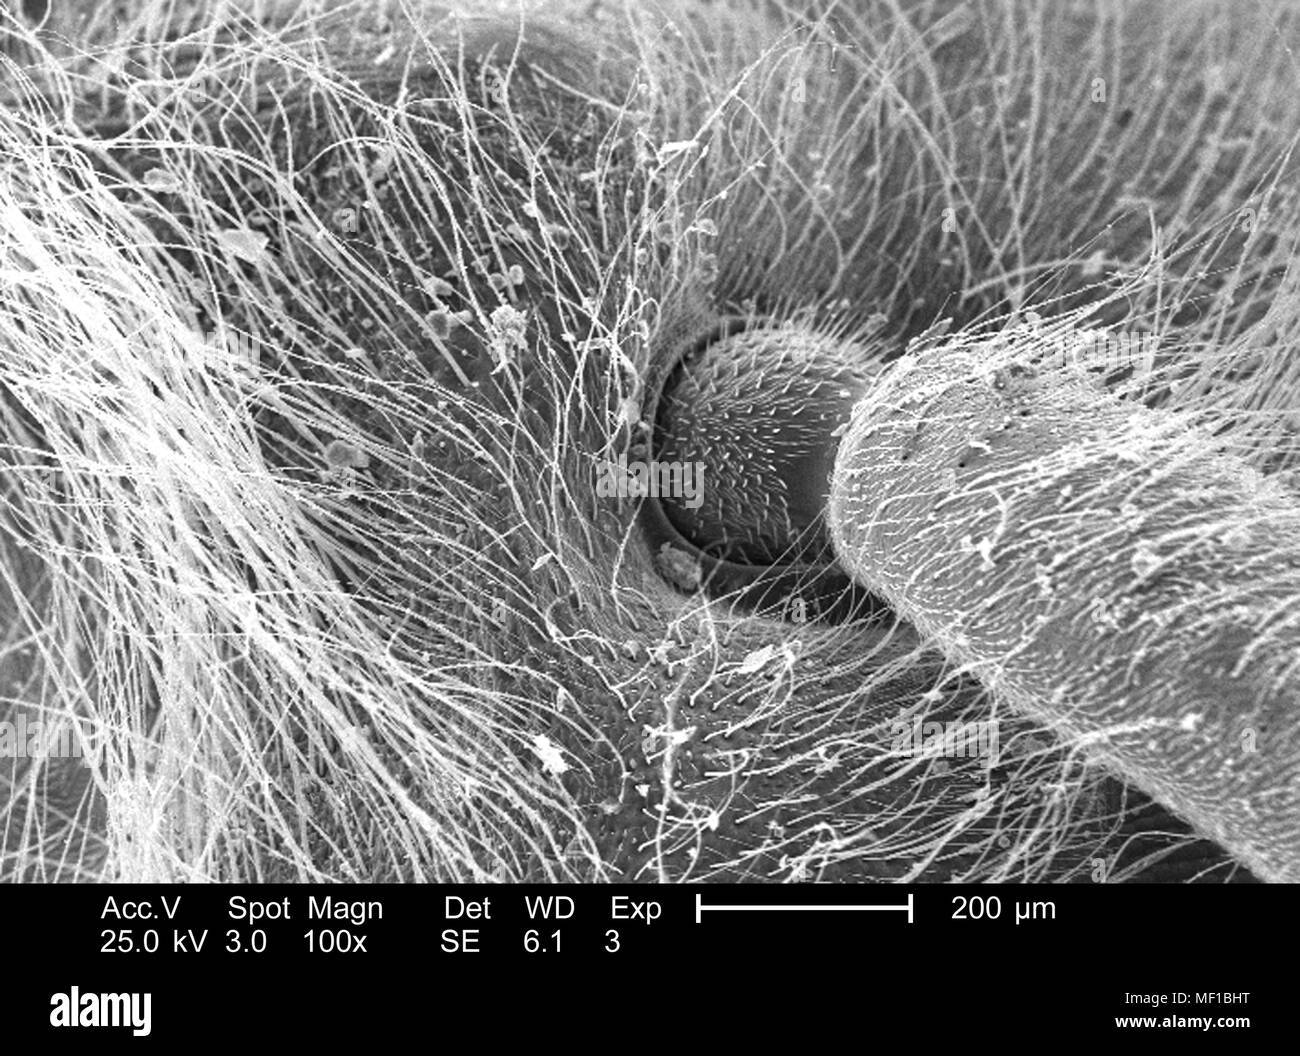 Morphologische Details der nicht identifizierten Insekten Kopf, Kugel-und-Buchse Typ gemeinsame, Im 100 x vergrößert Rasterelektronenmikroskopische (SEM) Bild 2005 dargestellt. Mit freundlicher Seuchenkontrollzentren (CDC)/Janice Haney Carr. () Stockfoto